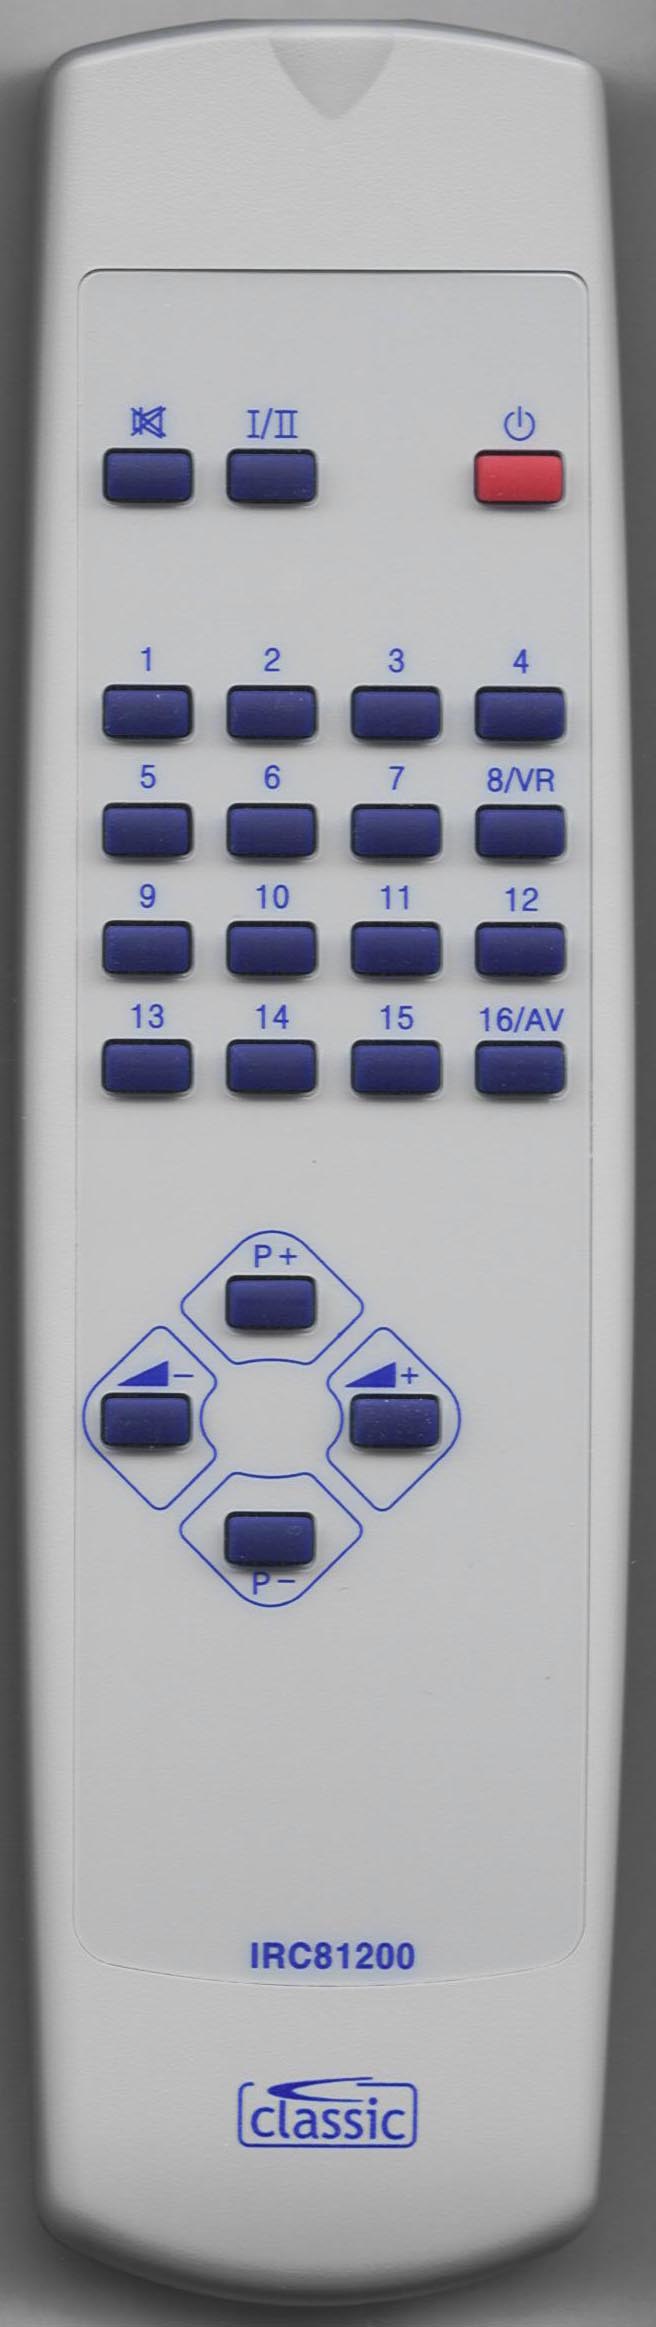 ORION 1810-0150 Remote Control